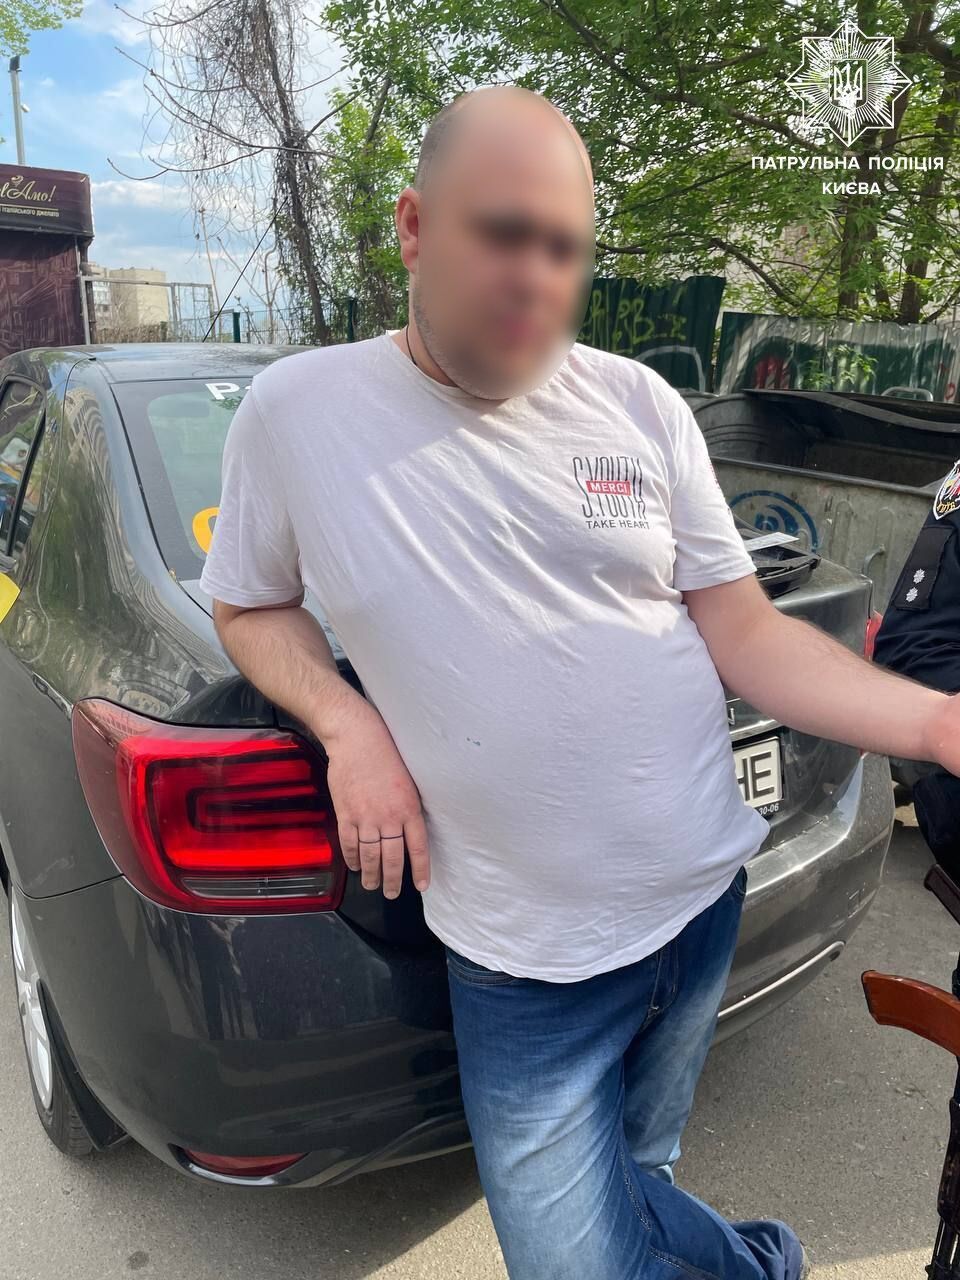 В Киеве водитель протаранил легковушку и скрылся: в крови обнаружили более 5 промилле алкоголя. Фото